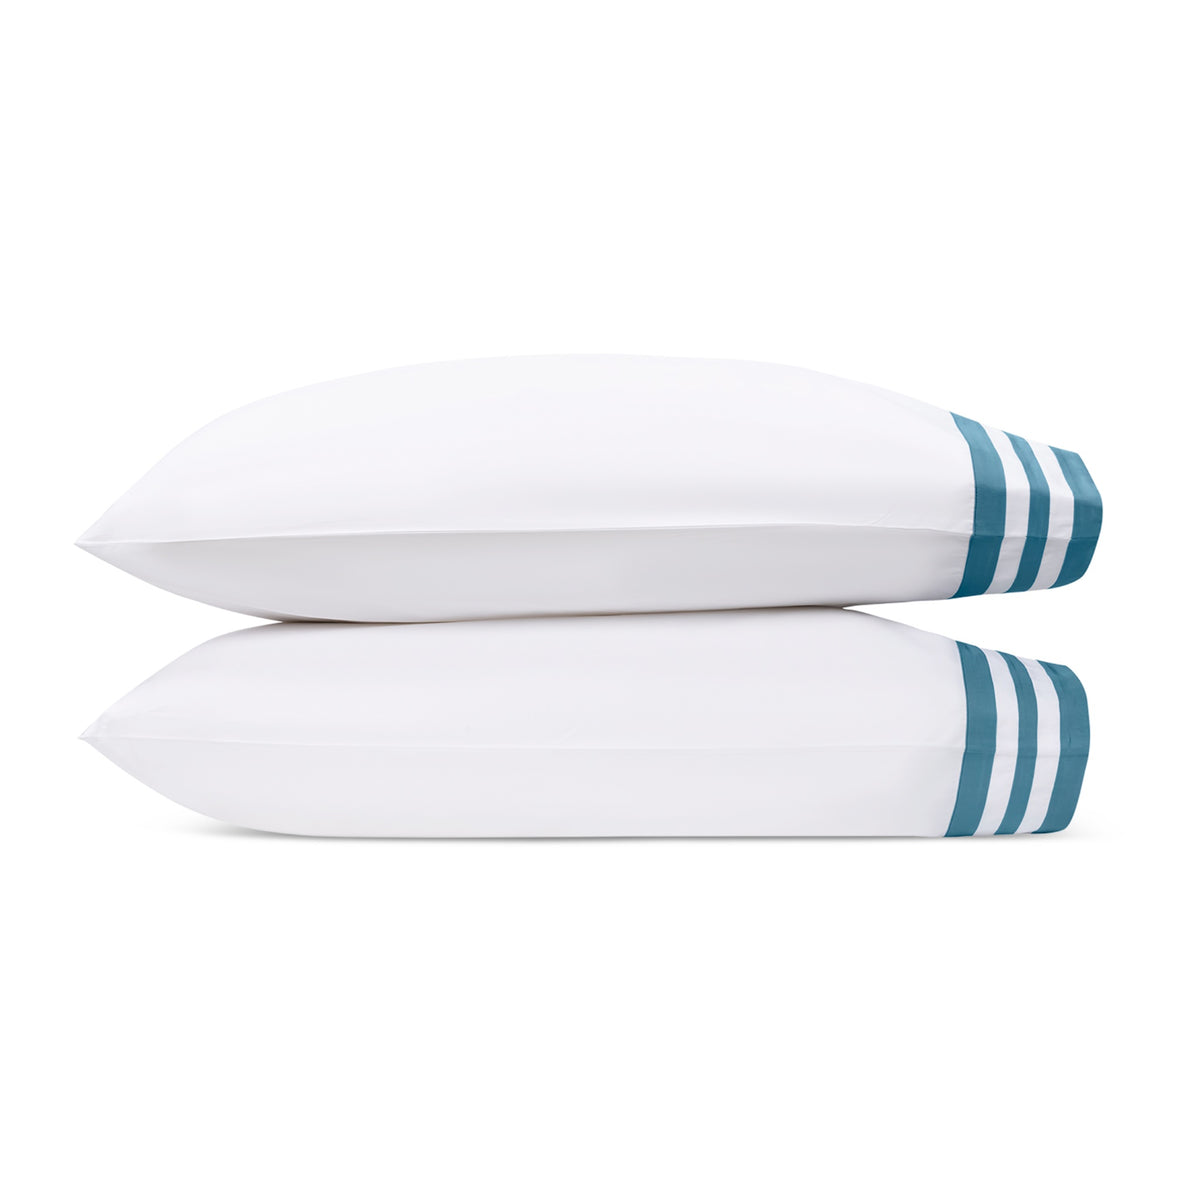 Pair of Pillowcases of Matouk Allegro Bedding in Sea Color